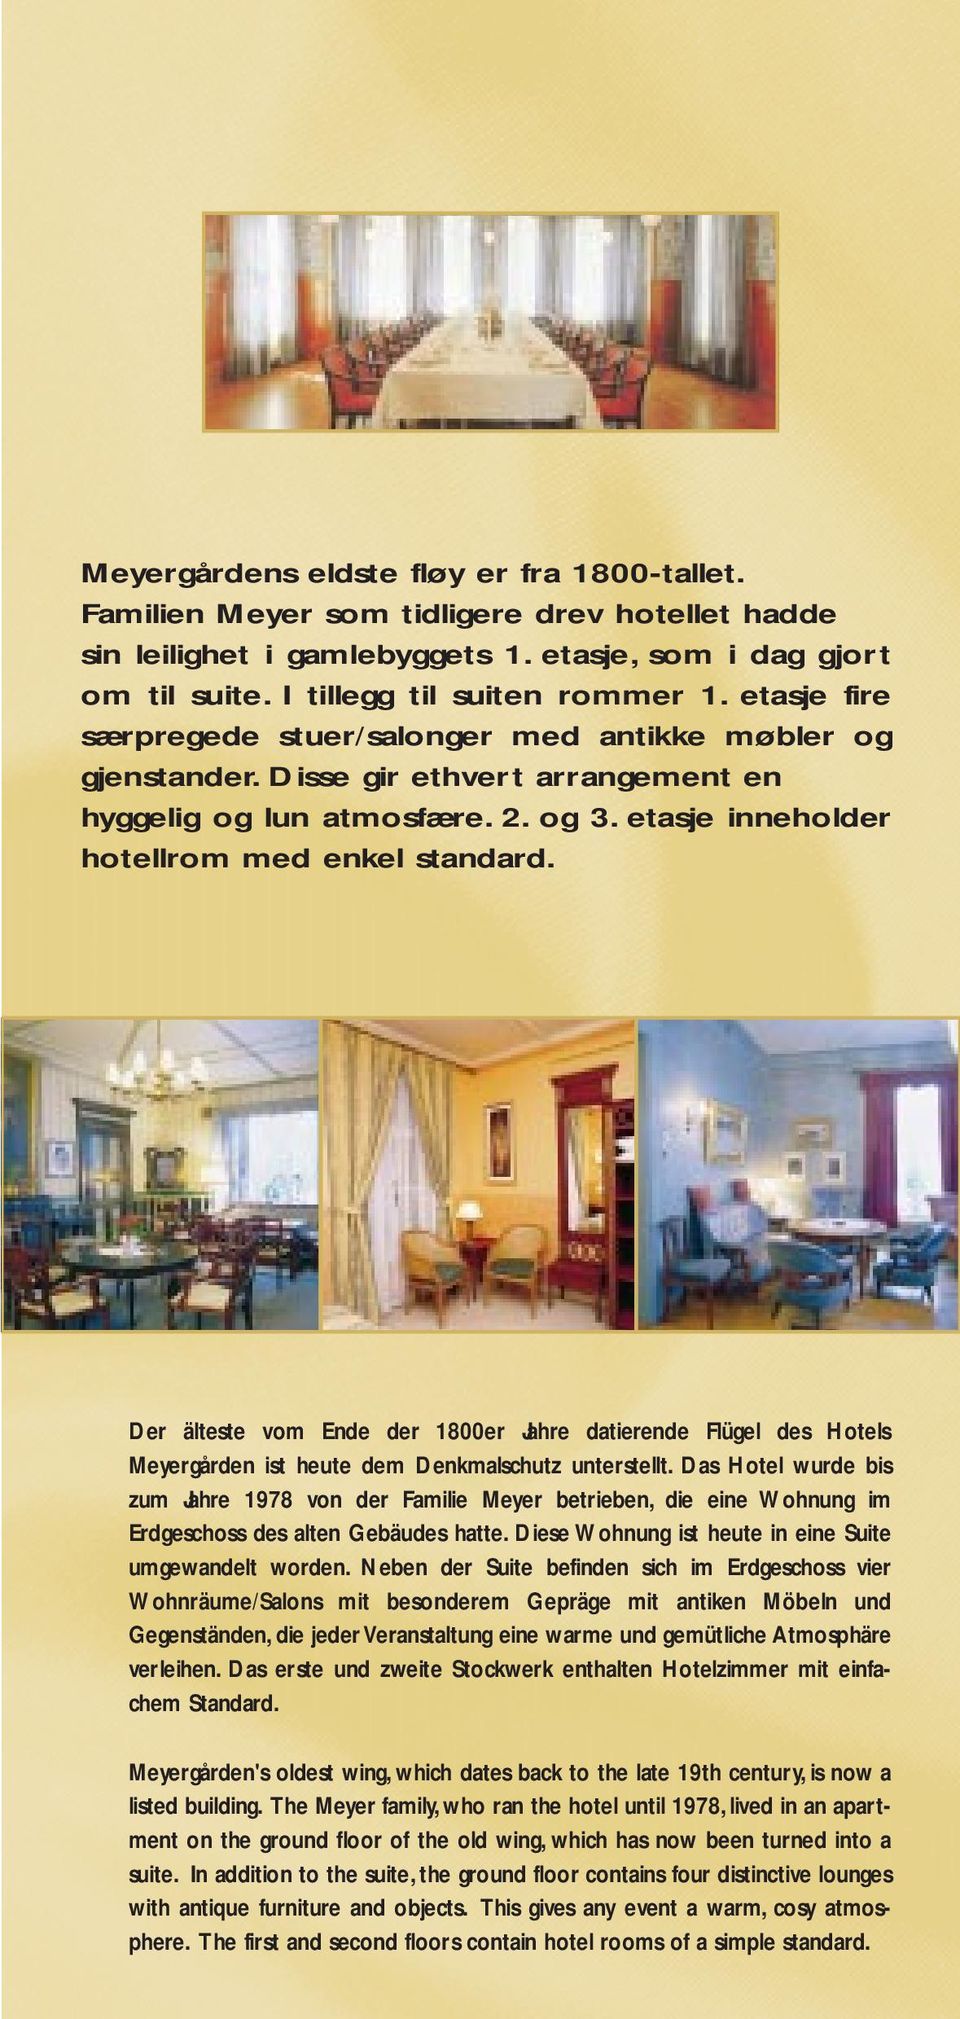 Der älteste vom Ende der 1800er Jahre datierende Flügel des Hotels Meyergården ist heute dem Denkmalschutz unterstellt.